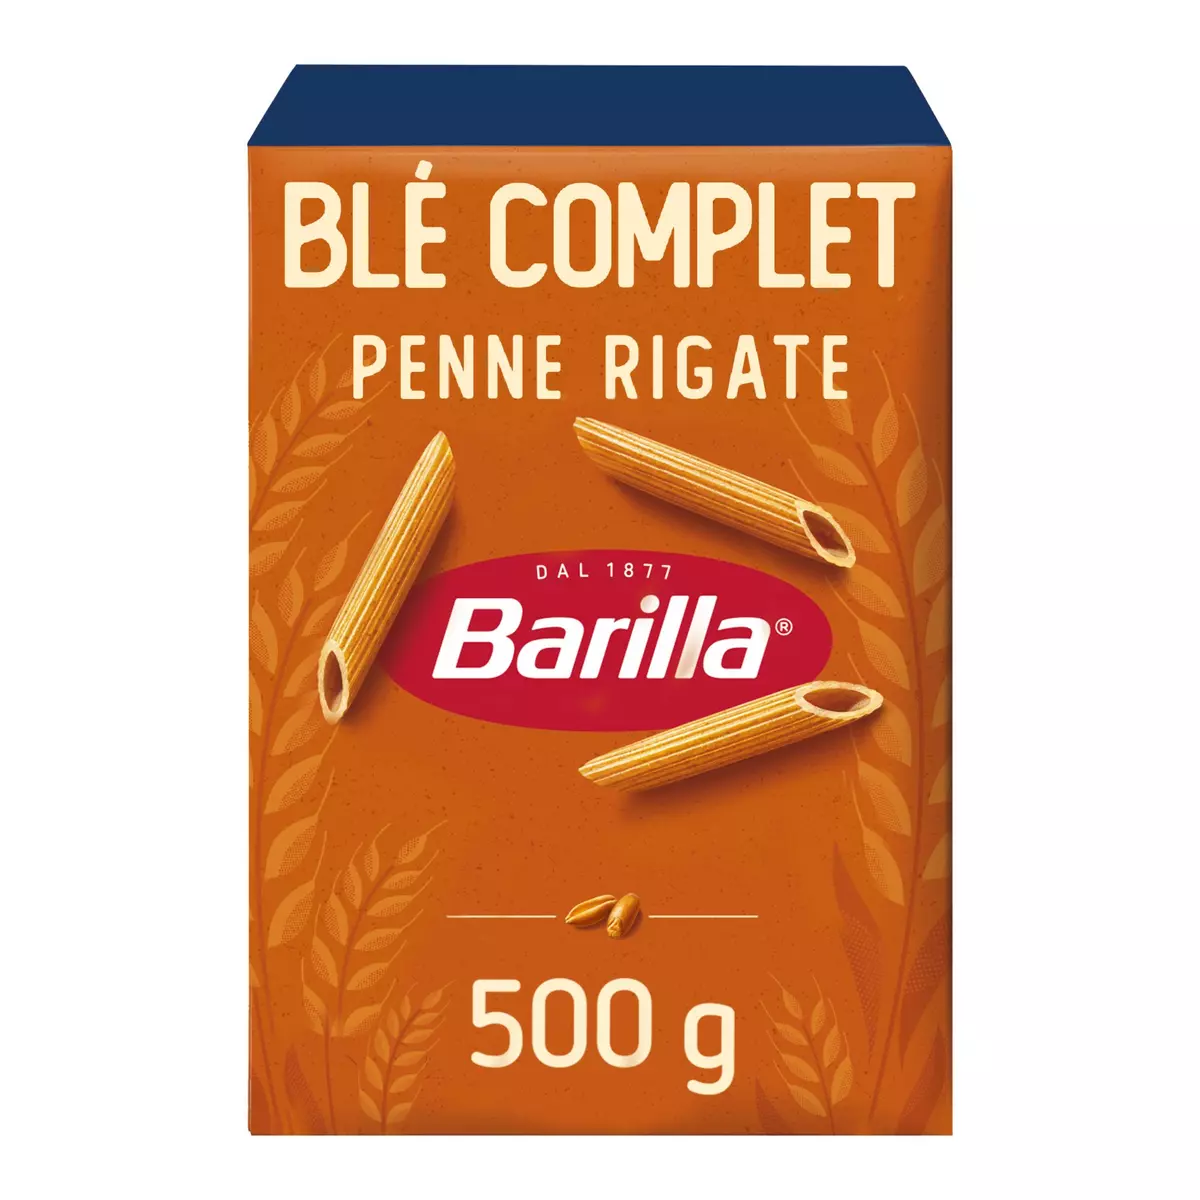 BARILLA Penne rigate au blé complet 500g